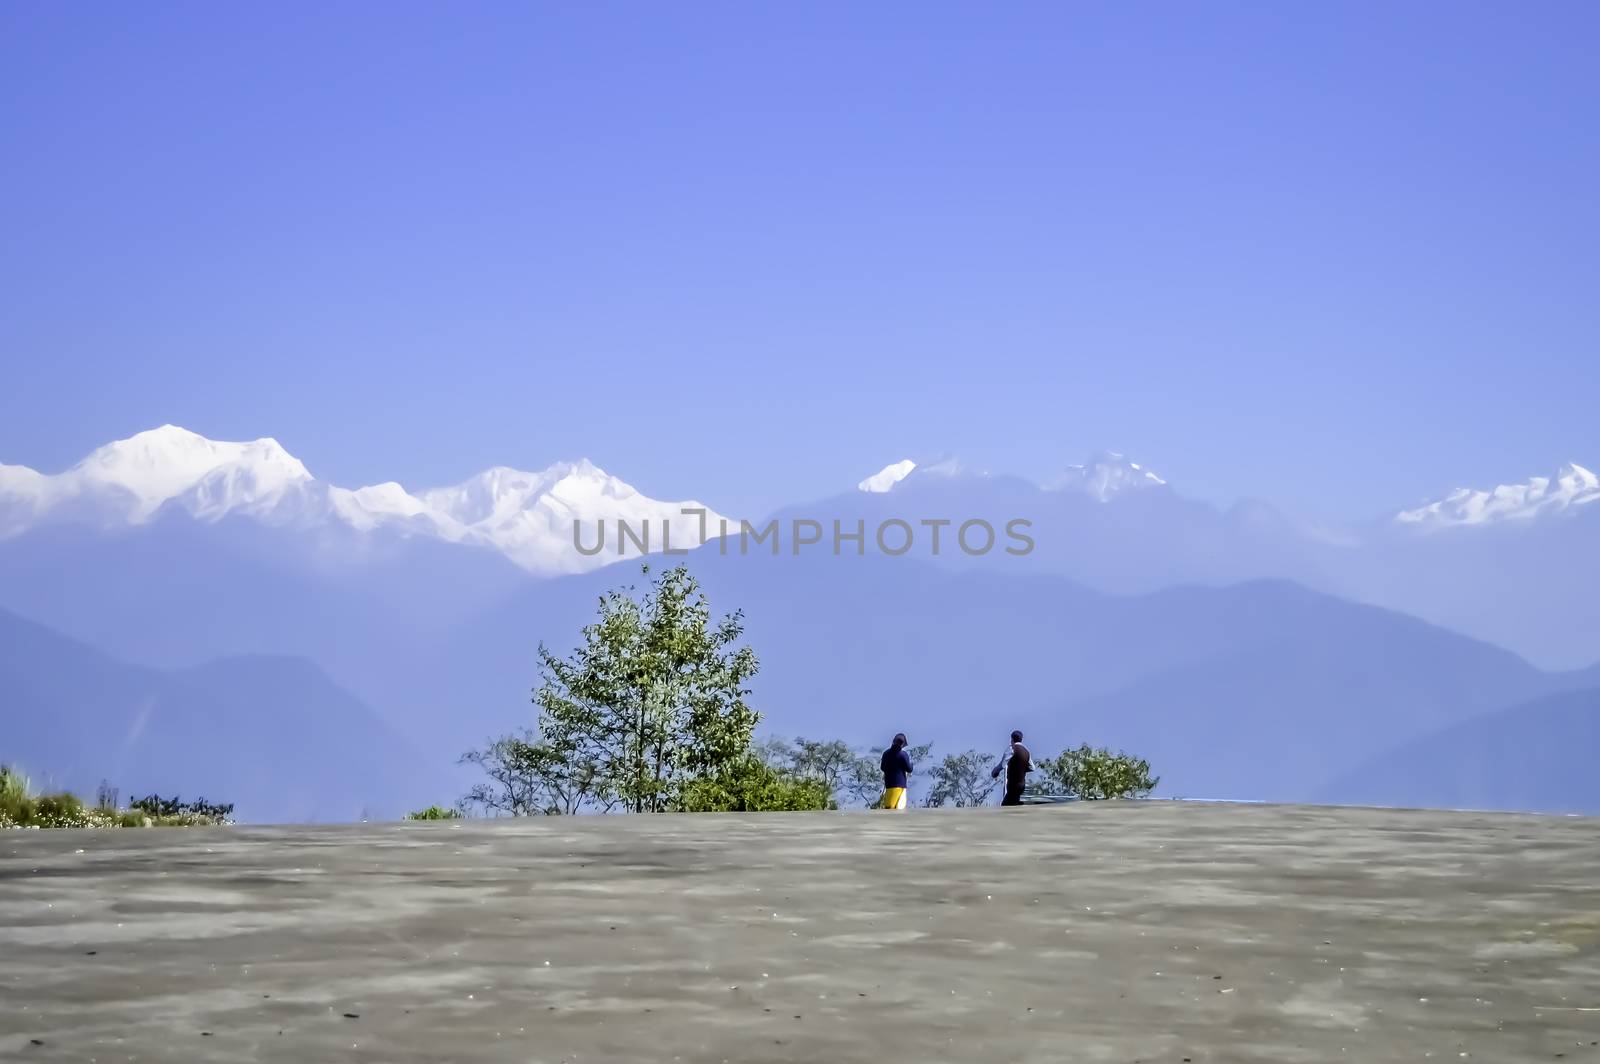 Kanchanjungha range from dzongri pass sikkim near Pelling Helipad by sudiptabhowmick